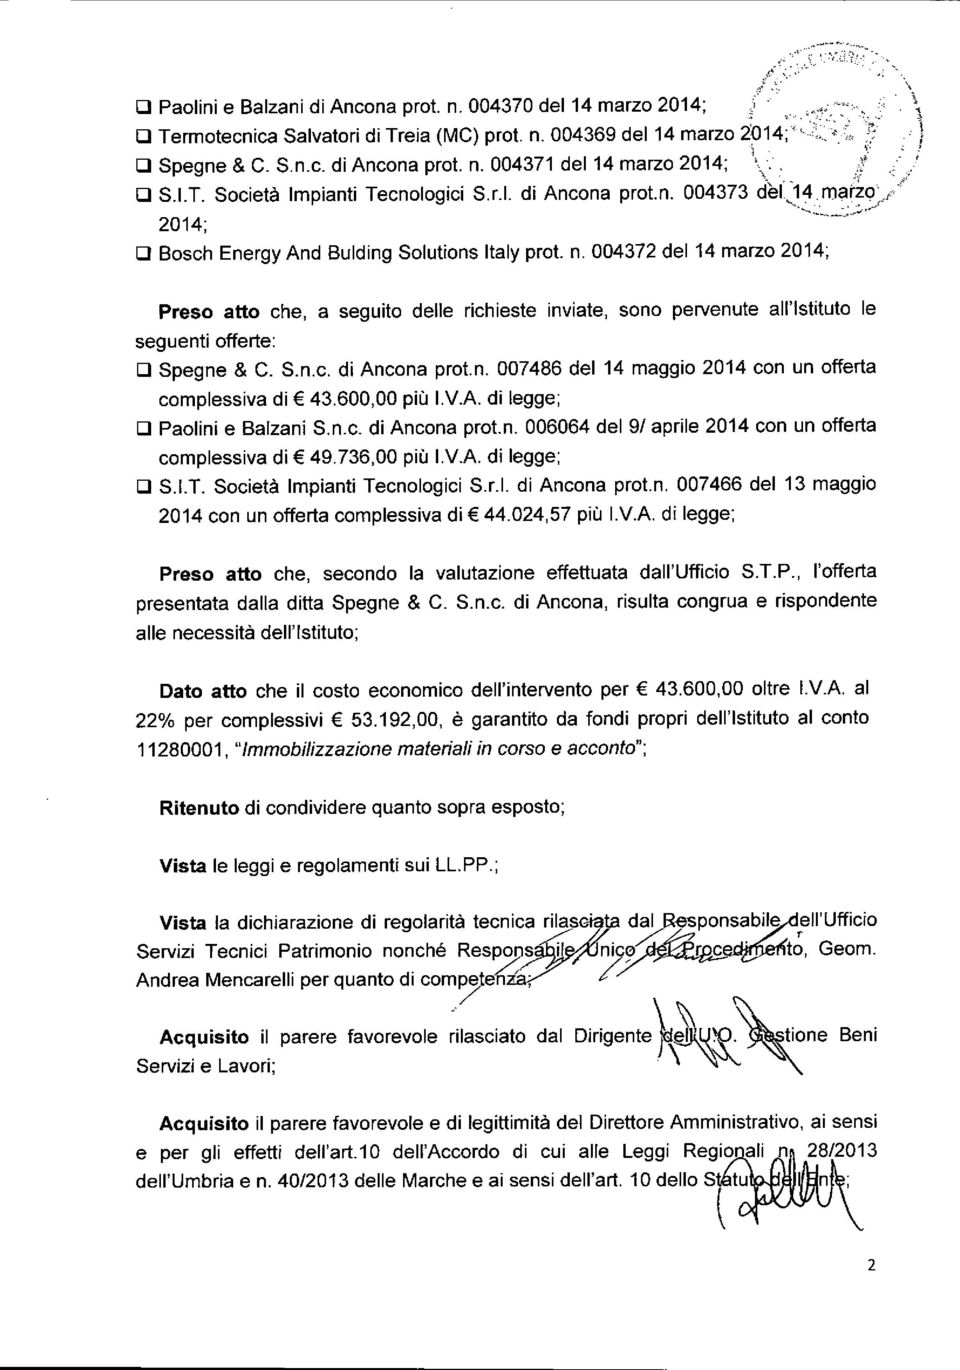 004372 del 14 marzo 2014; \ \1 1 j Preso atto che, a seguito delle richieste inviate, sono pervenute all'istituto le seguenti offerte: D Spegne & C. S.n.c. di Ancona prot.n. 007486 del 14 maggio 2014 con un offerta complessiva di 43.